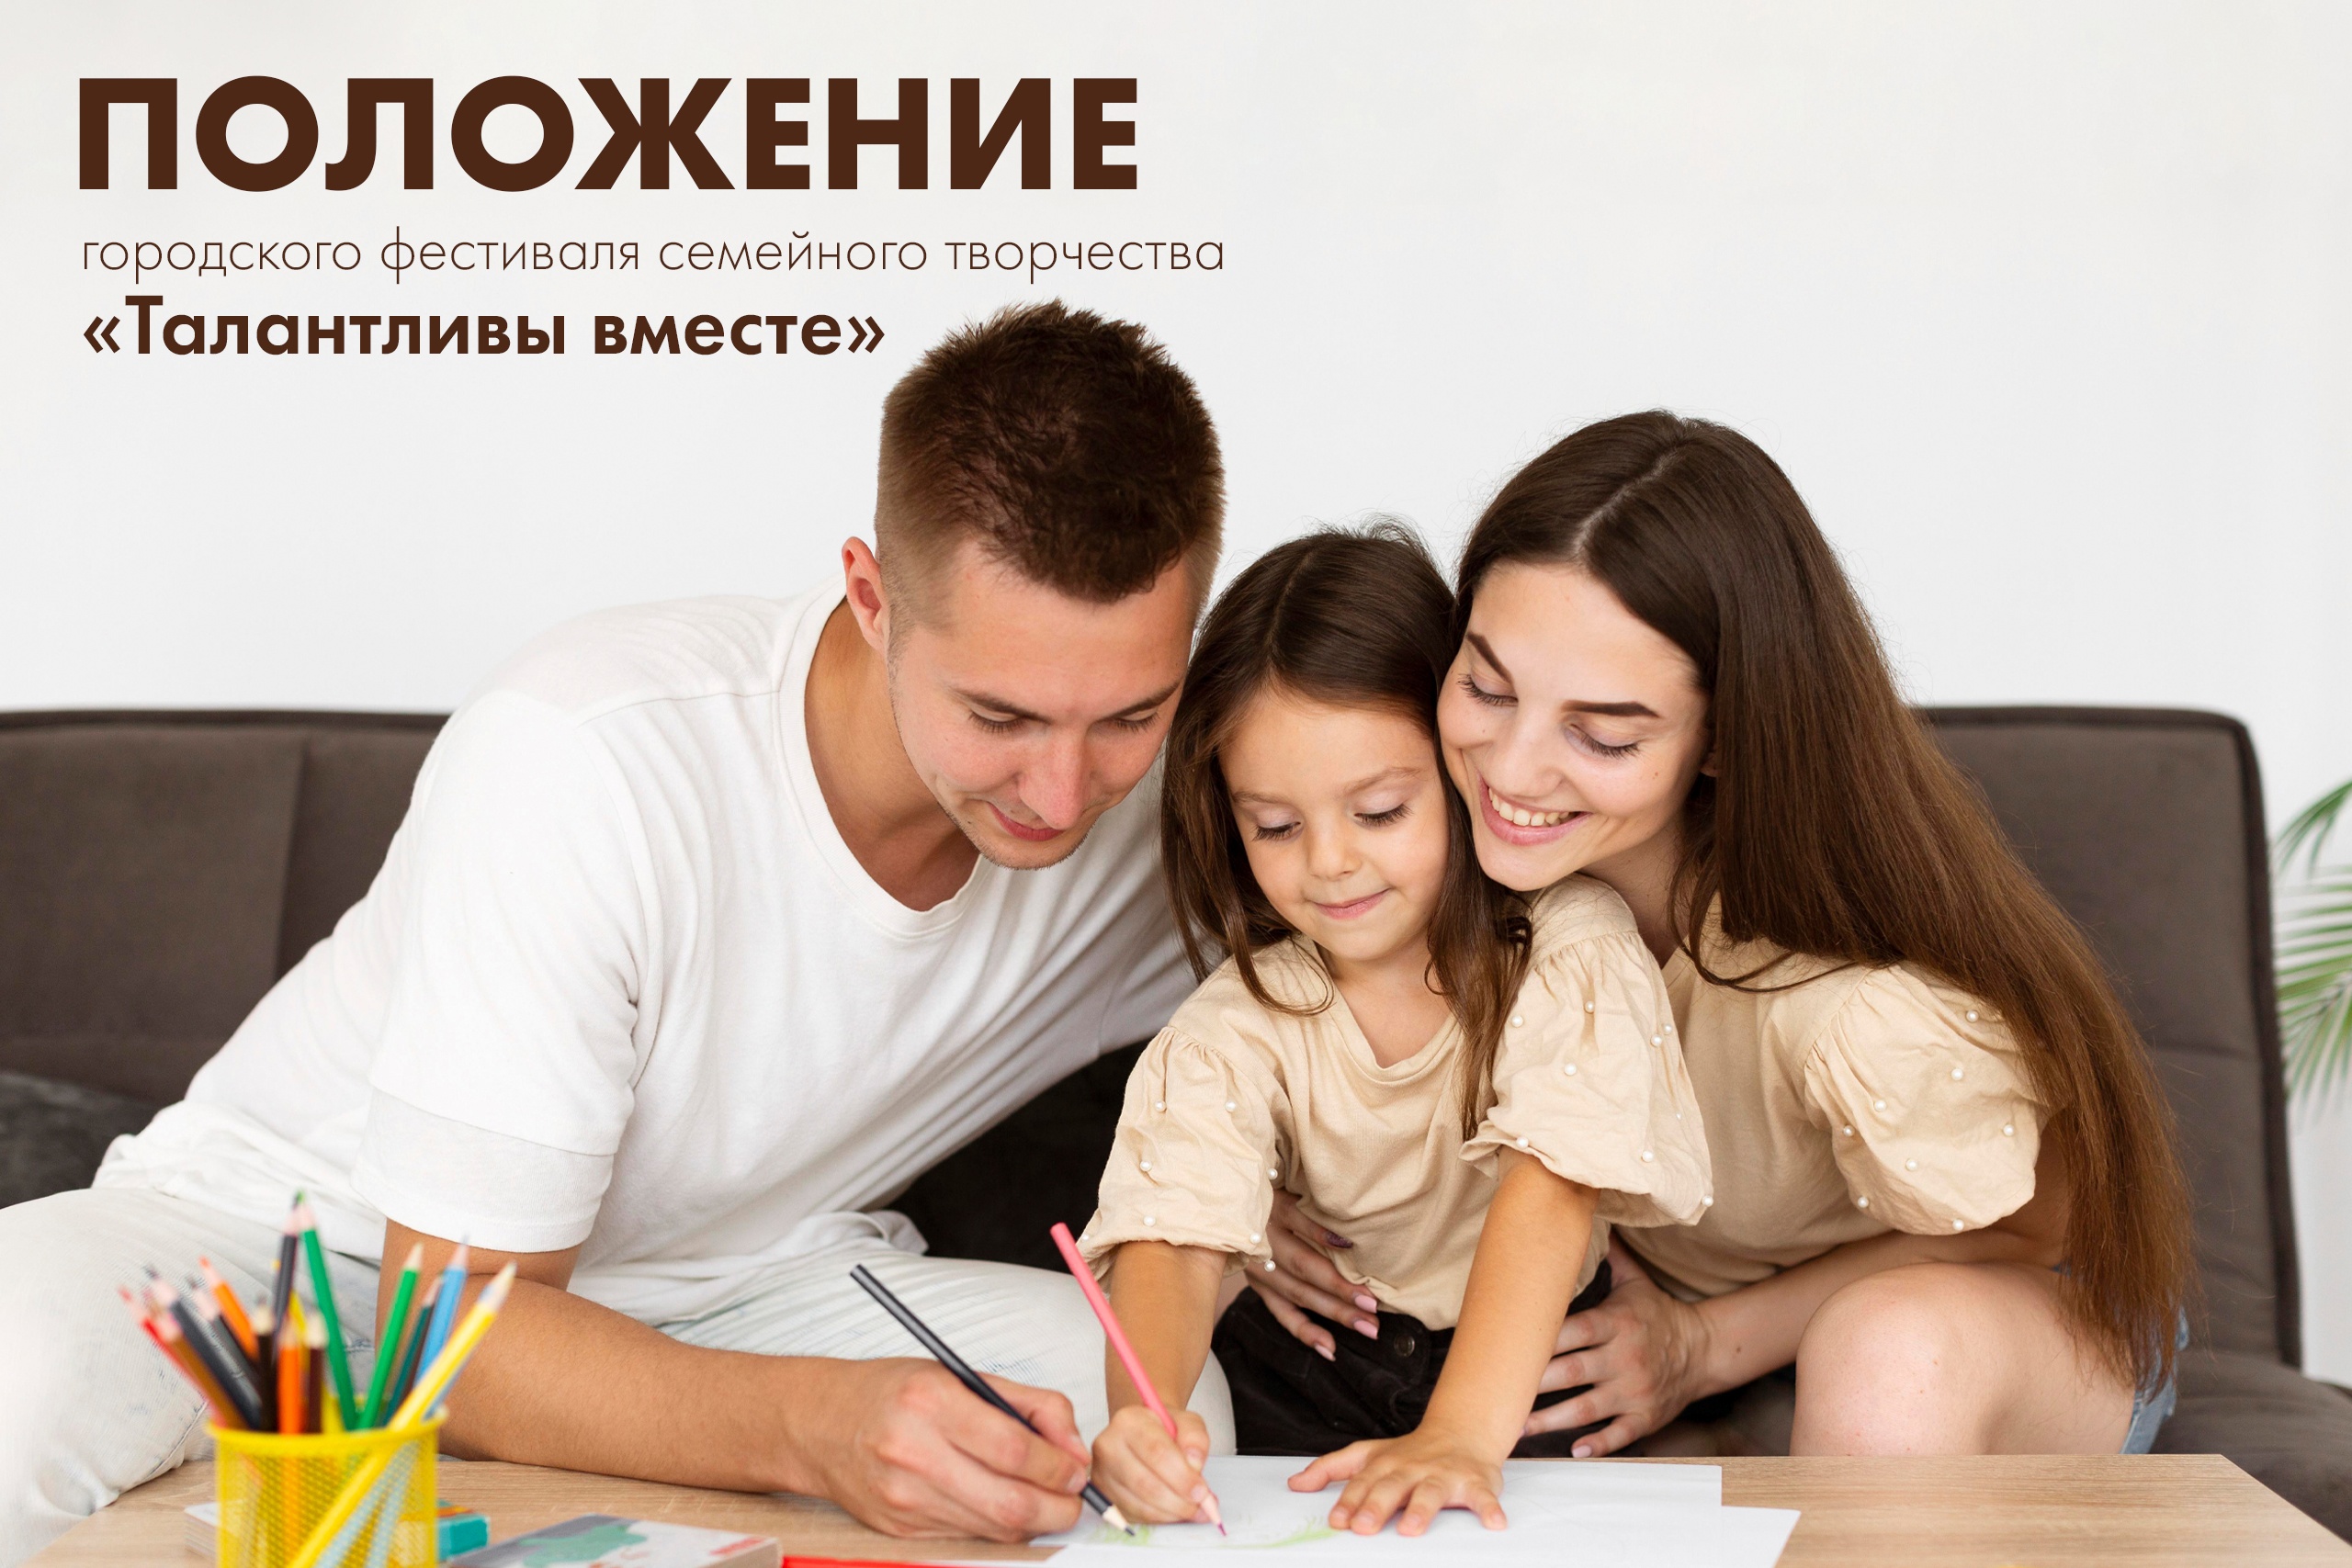 Приглашаем семьи города Новодвинска принять участие в городском фестивале семейного творчества «Талантливы вместе»!